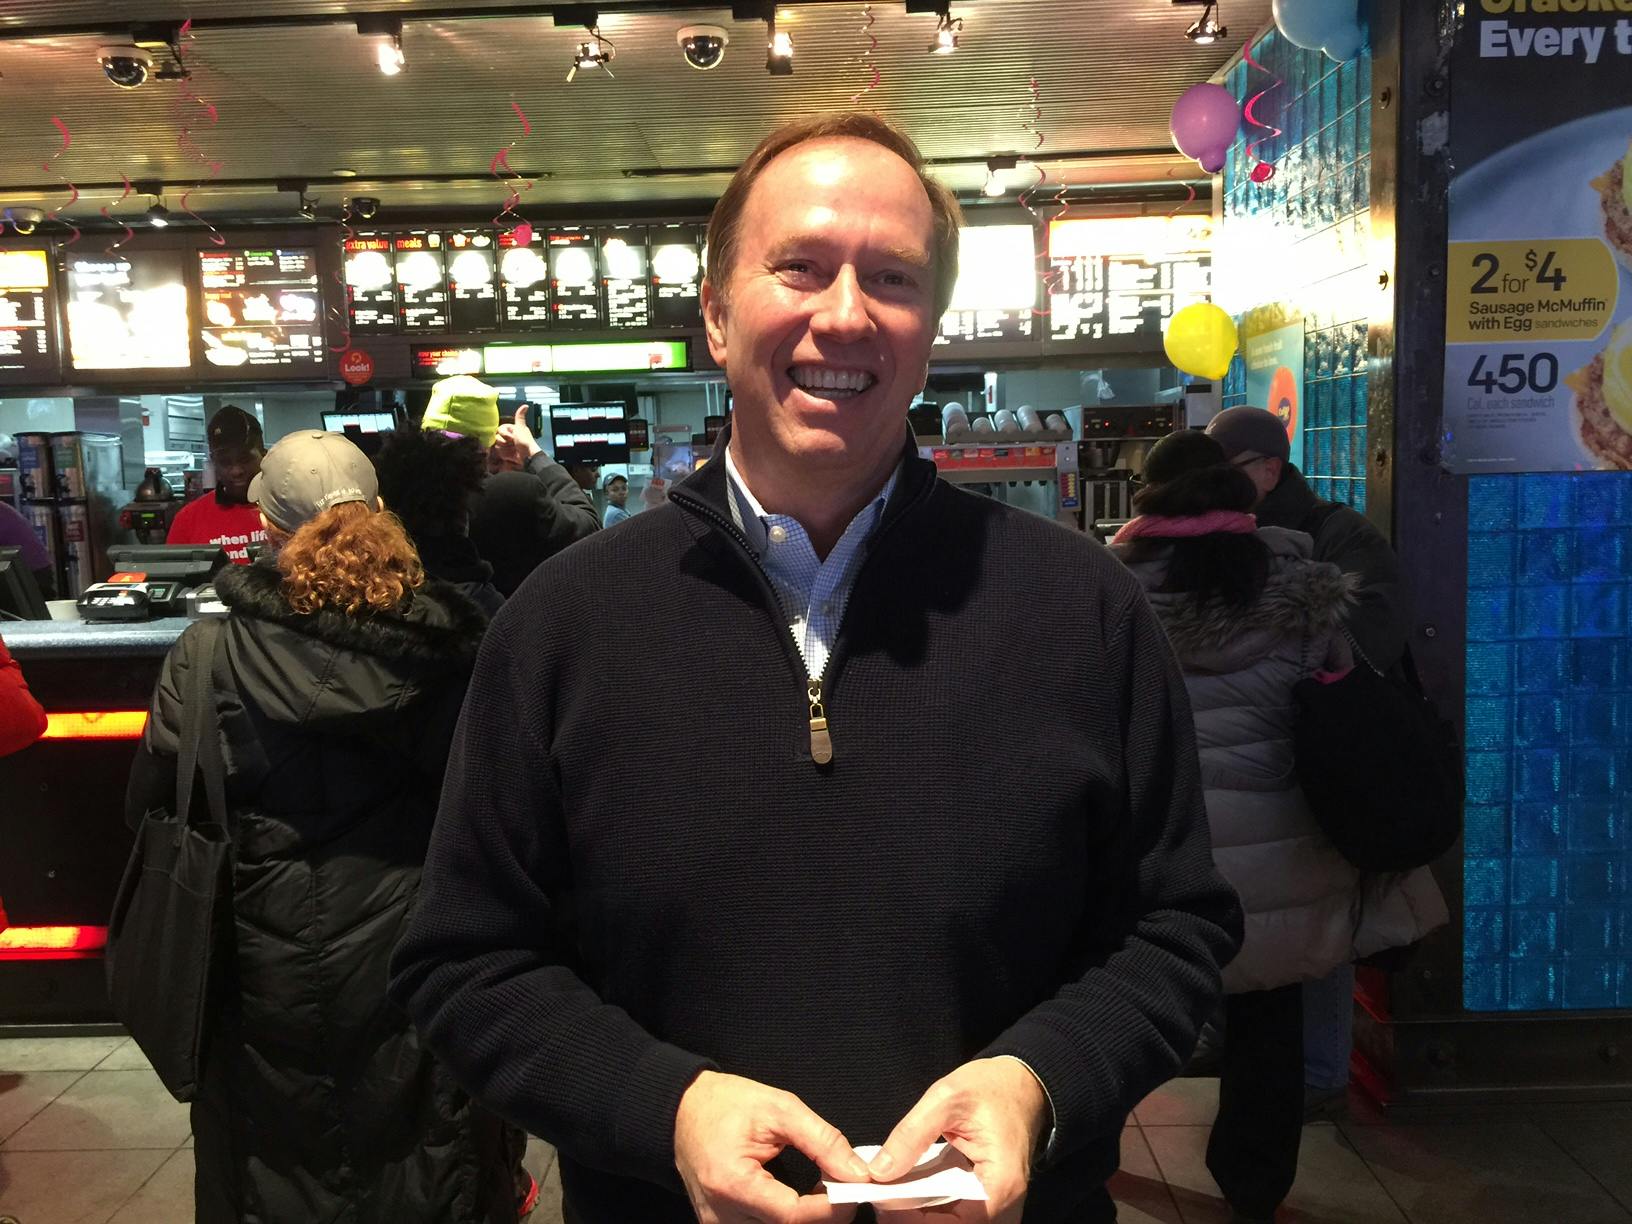 Jim Lewis, proud McDonald's franchisee